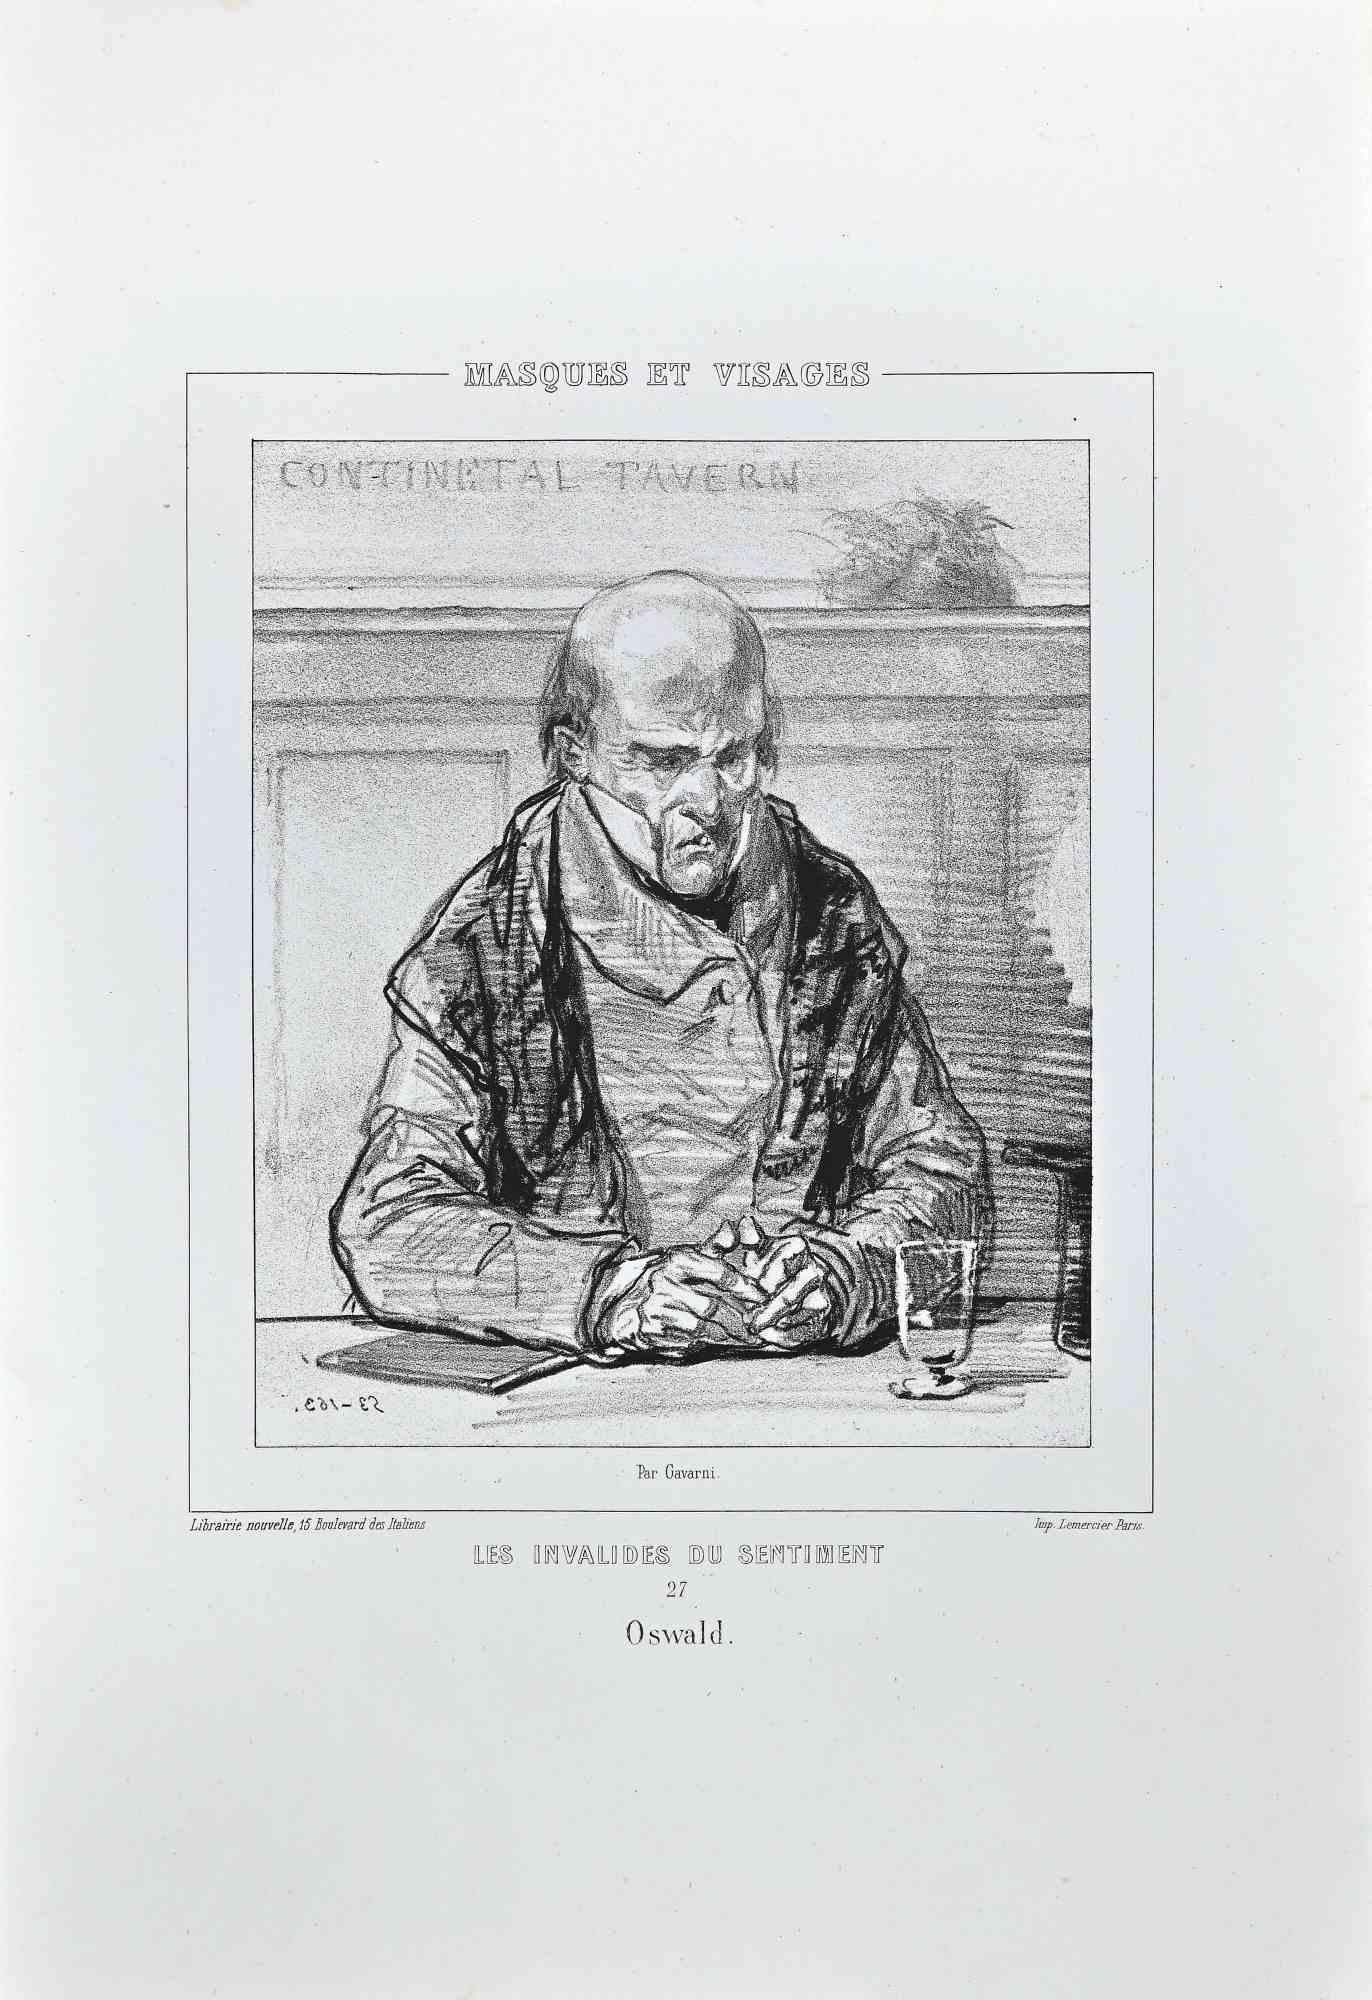 Les Invalides du Sentiment - Oswald ist eine Lithographie auf elfenbeinfarbenem Papier, die von dem französischen Zeichner Paul Gavarni (alias Guillaume Sulpice Chevalier Gavarni, 1804-1866) Mitte des 19.

Aus der Serie der "Masques et Visages". Auf